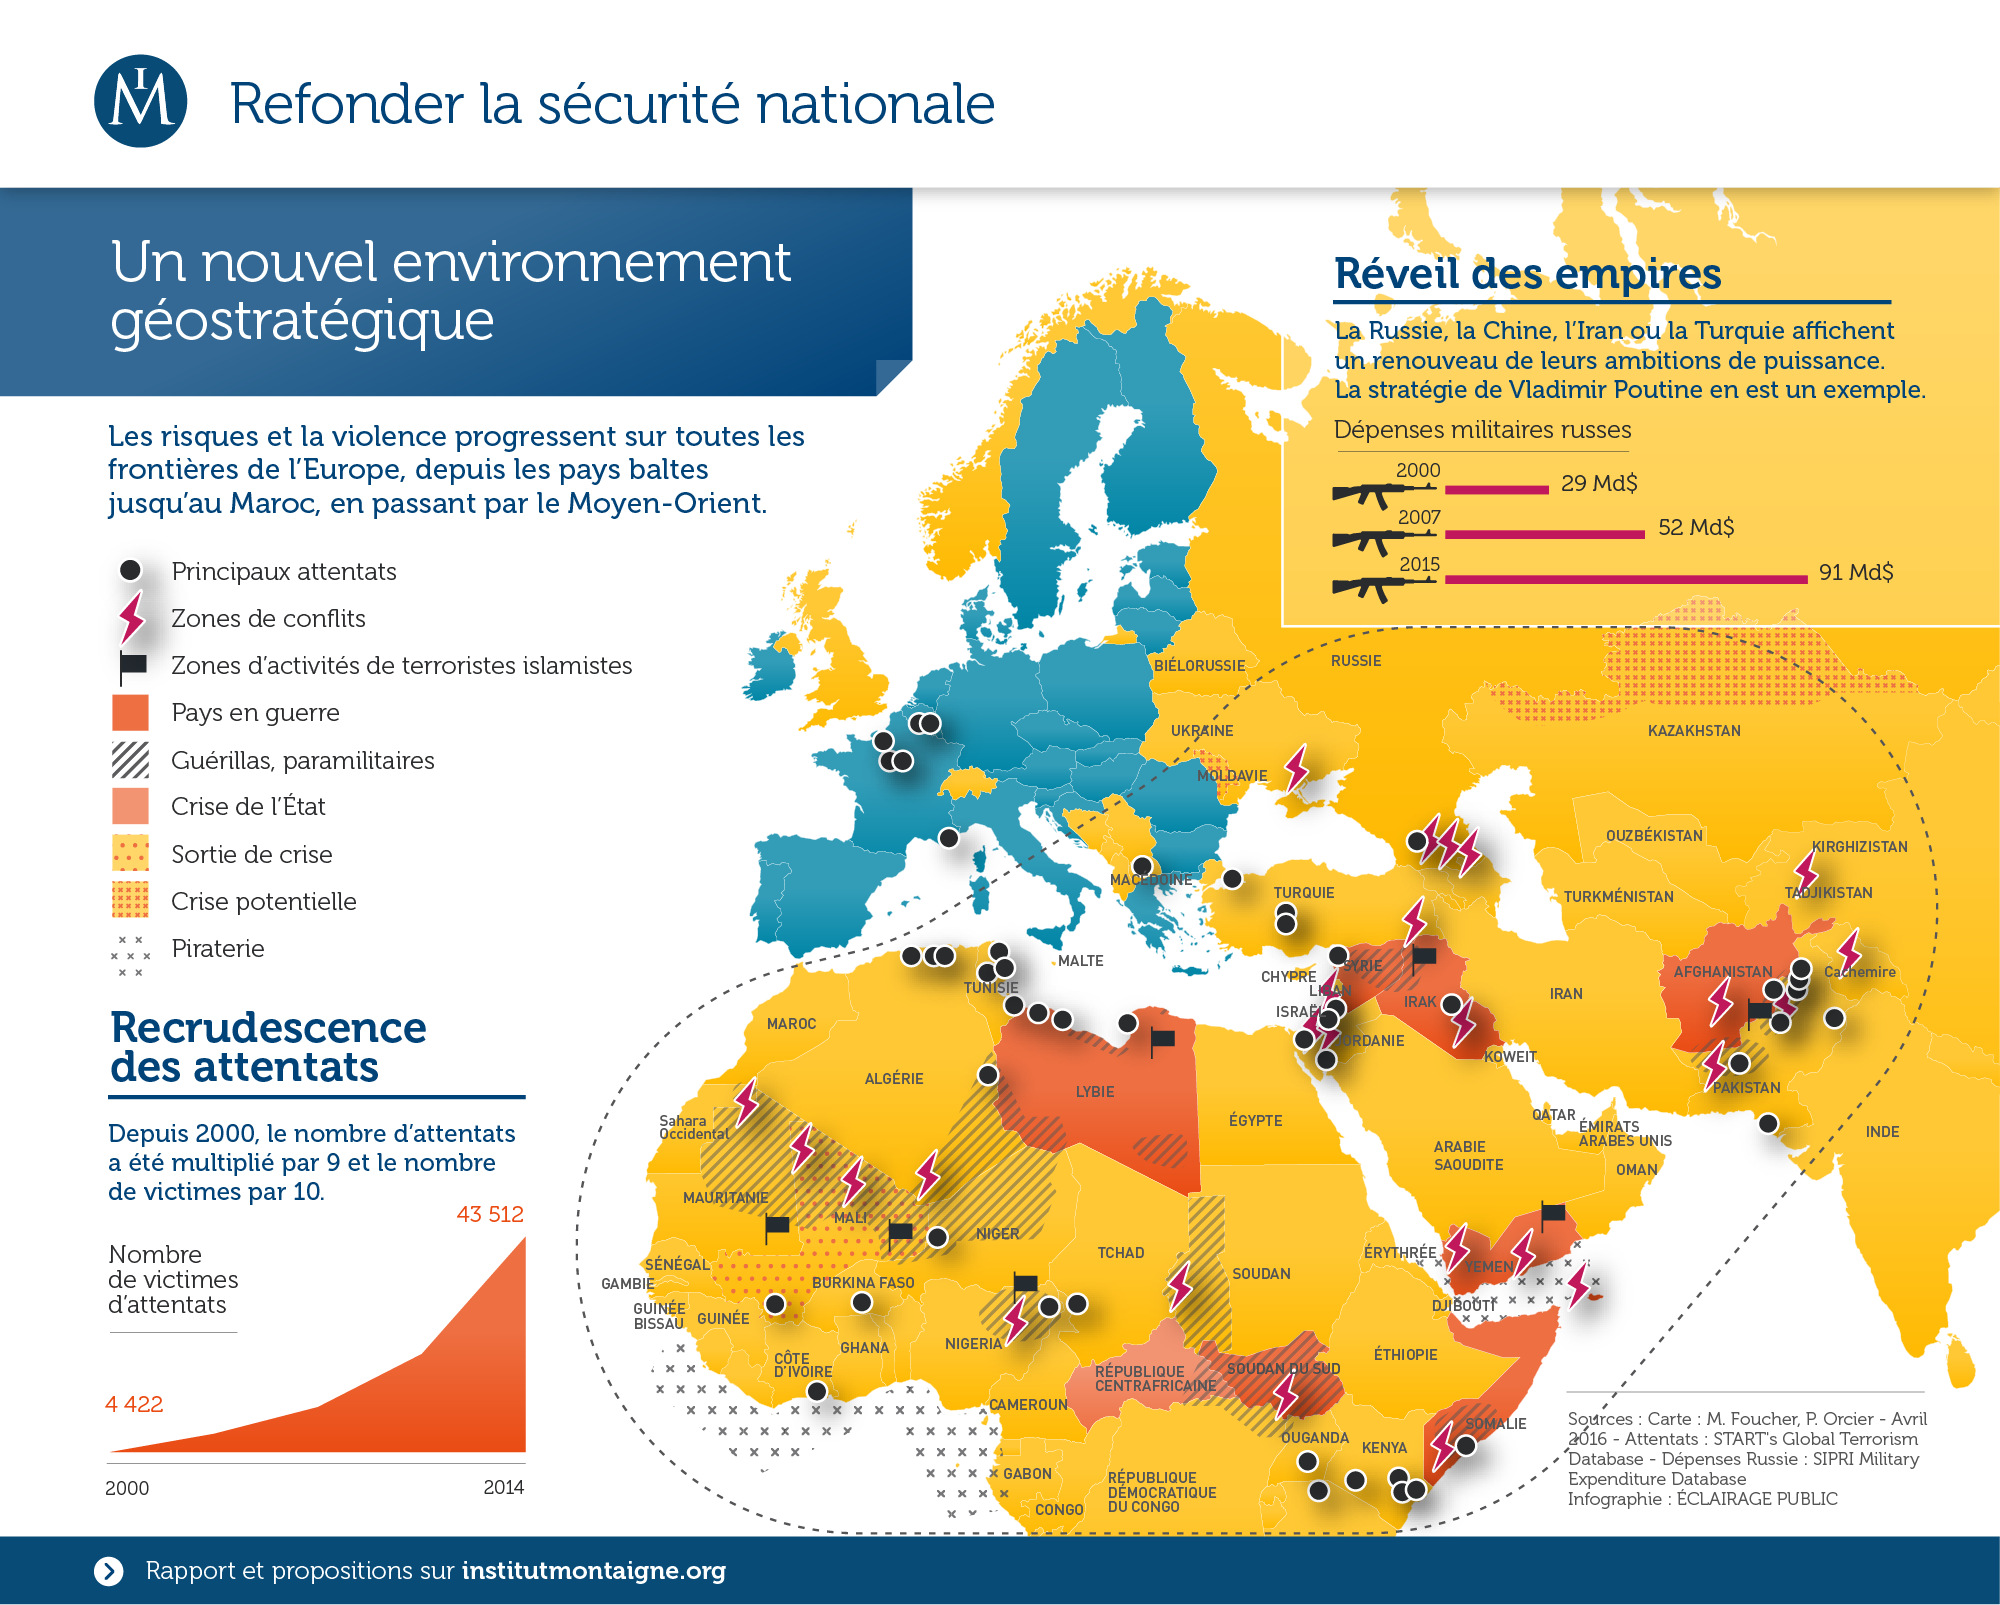 Institut-Montaigne-Refonder-la-securite-nationale-Menaces-infographie-ECLAIRAGE-PUBLIC-2000